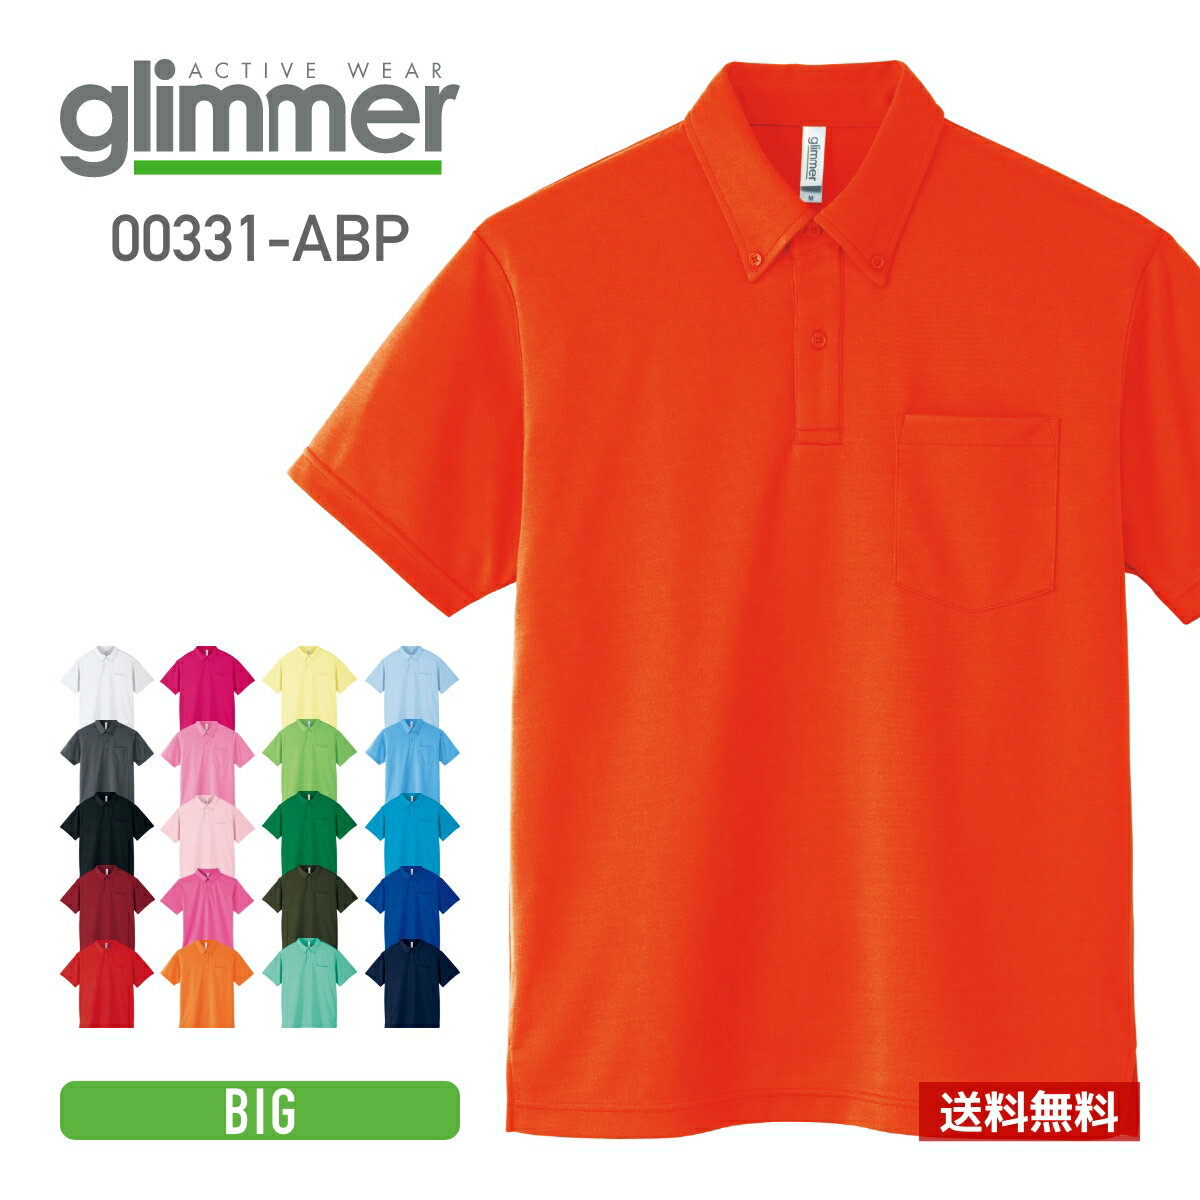 ポロシャツ 半袖 glimmer グリマー ドライ ボタンダウン ポロシャツ 00331-ABP 331abp ポケットあり吸汗 速乾 父の日…